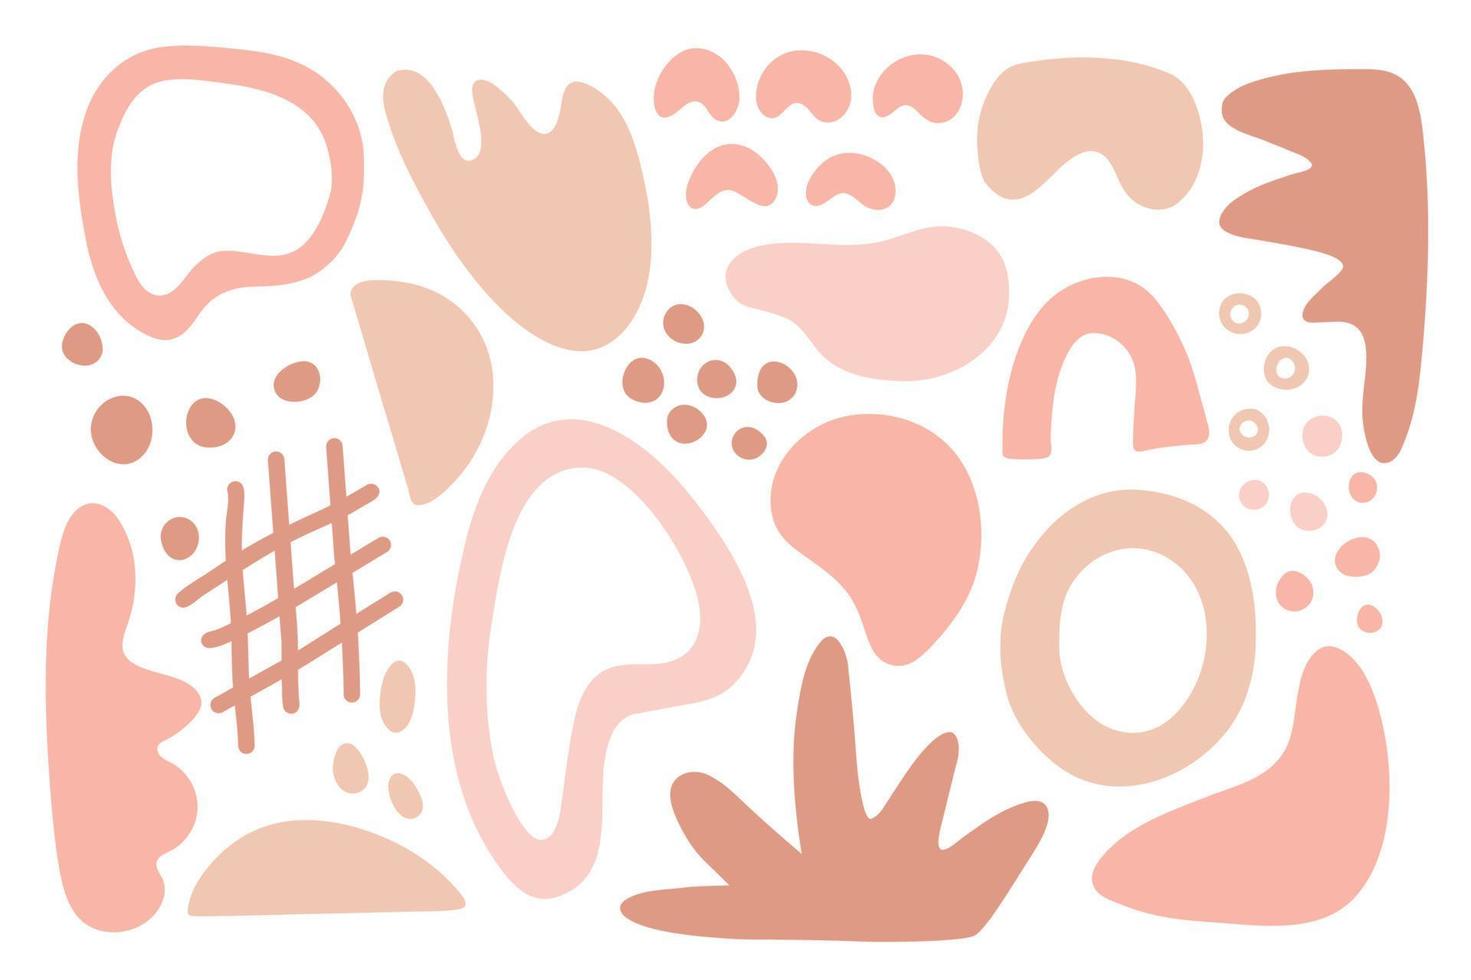 conjunto de formas orgánicas abstractas en colores pastel. elementos de diseño de color rosa y beige aislados sobre fondo blanco. ilustración de dibujado a mano de vector plano. perfecto para redes sociales, tarjetas, decoraciones.